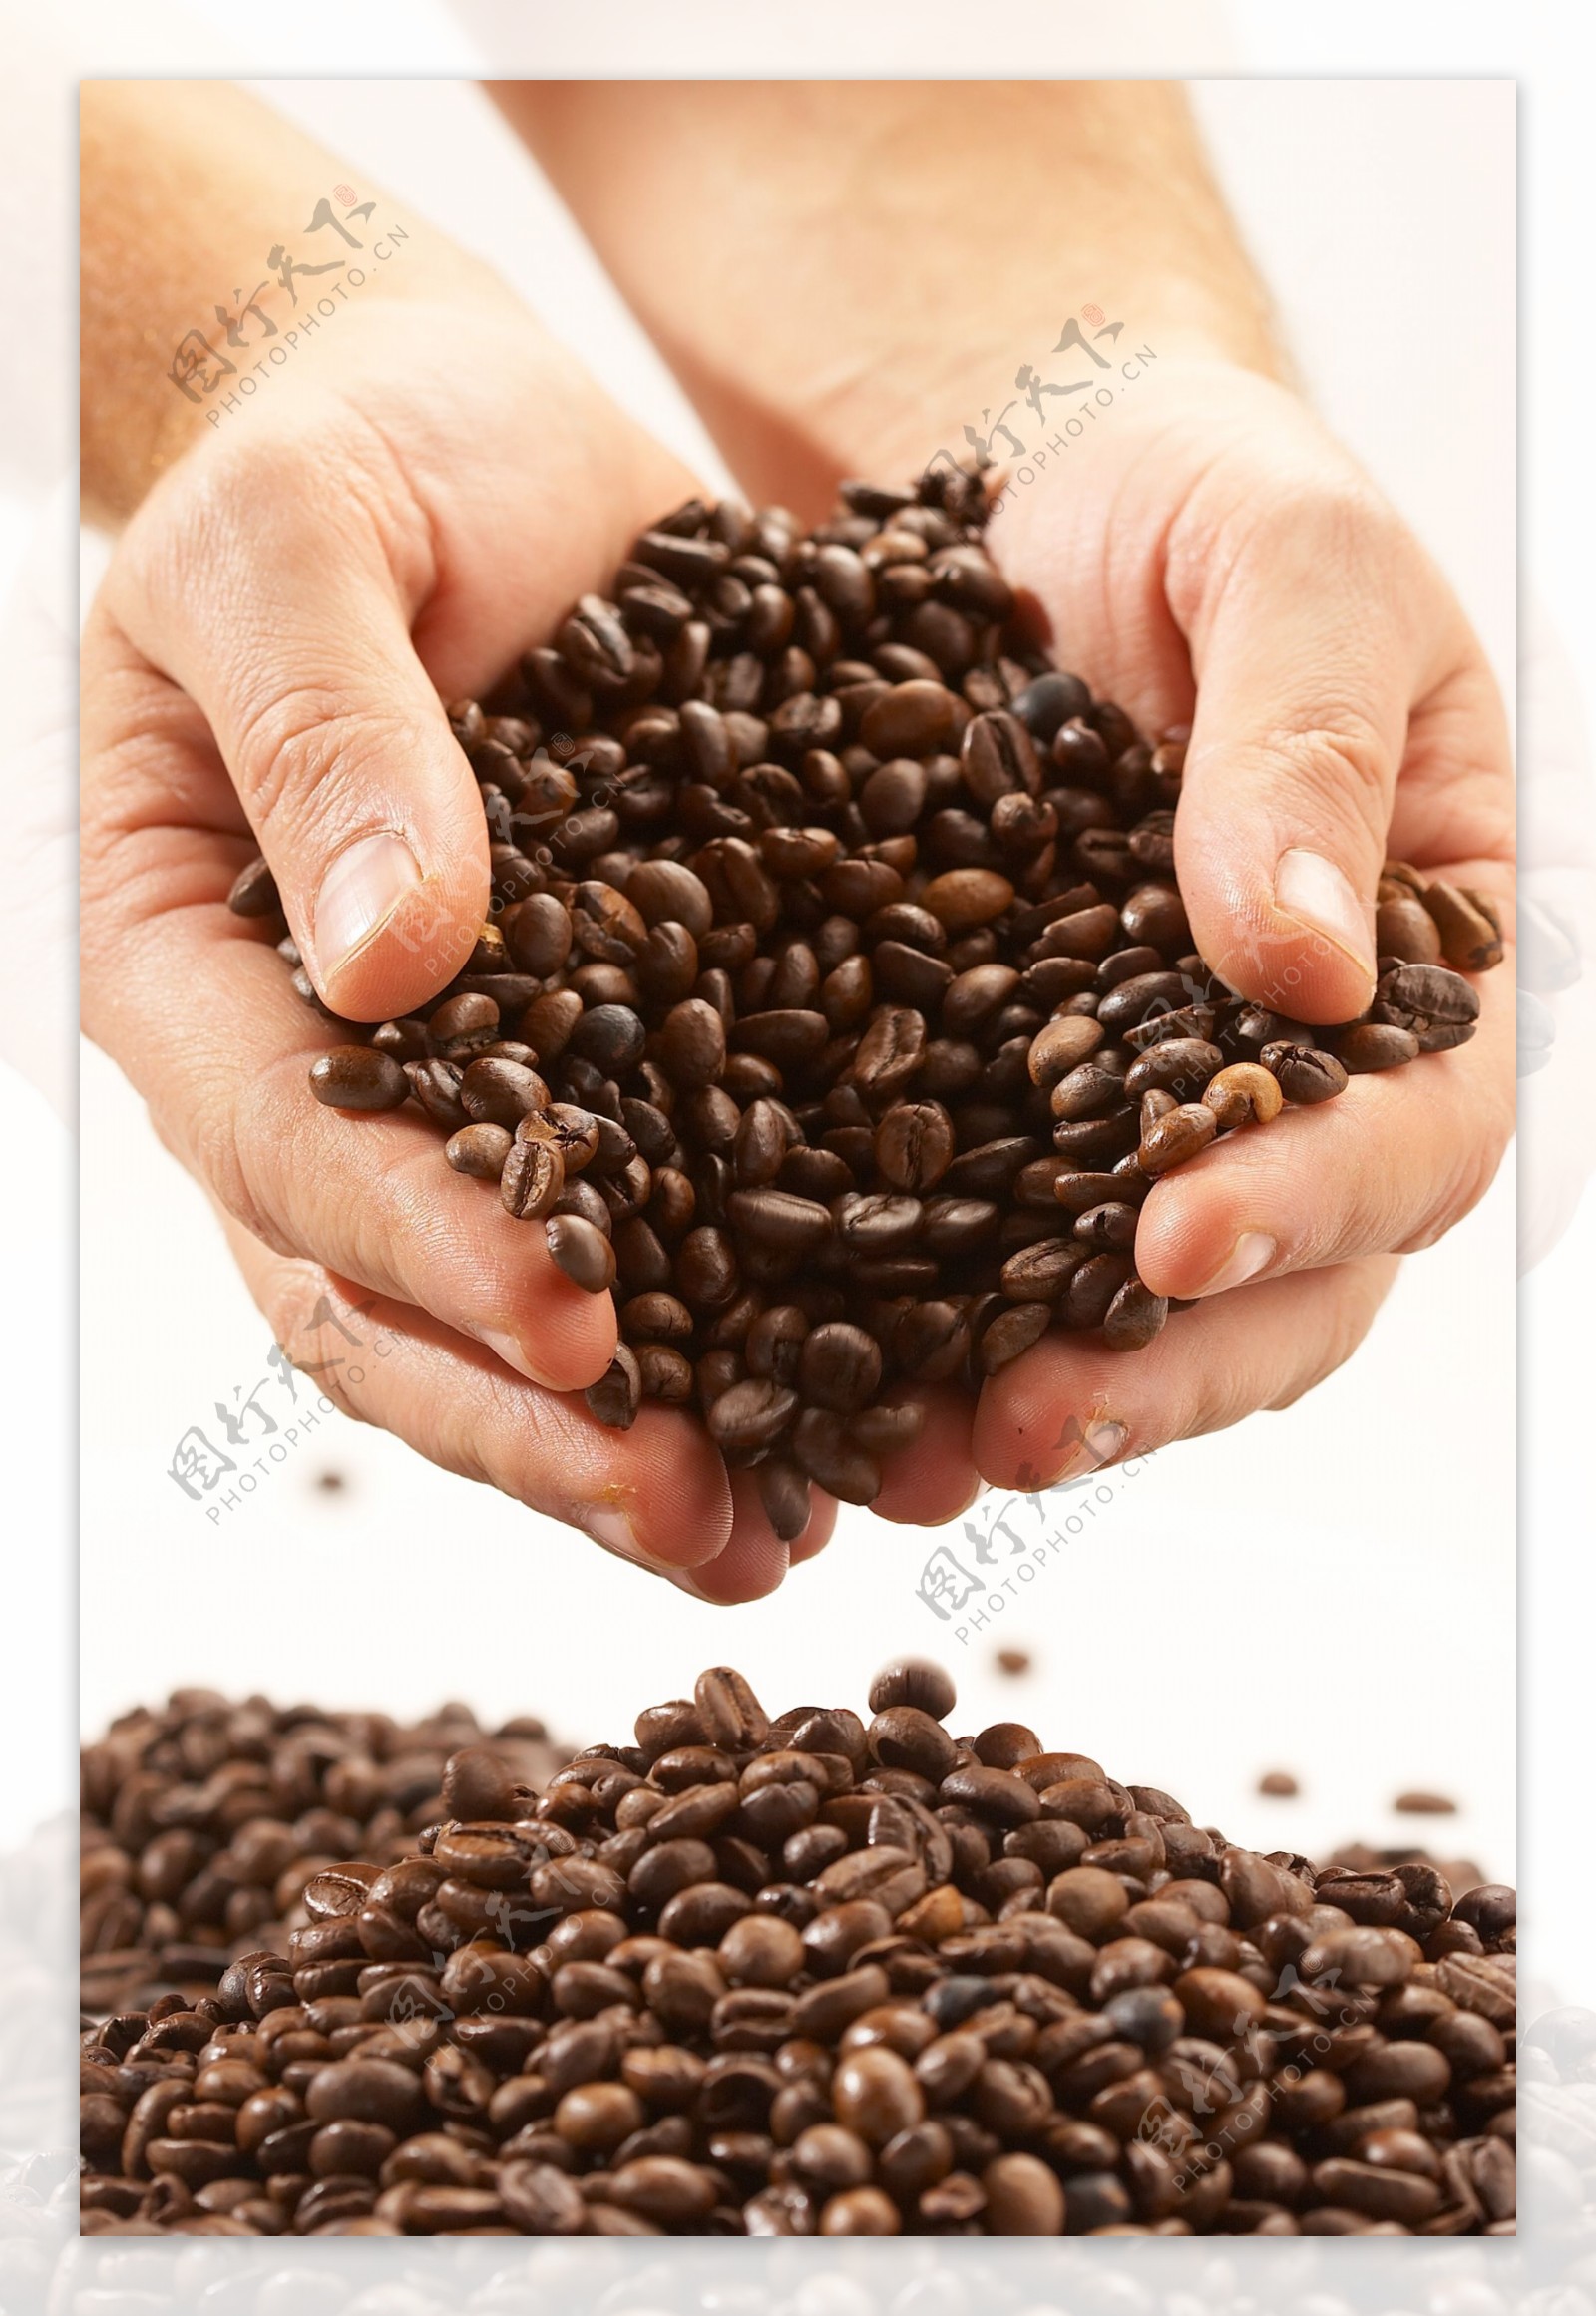 双手捧着的咖啡豆